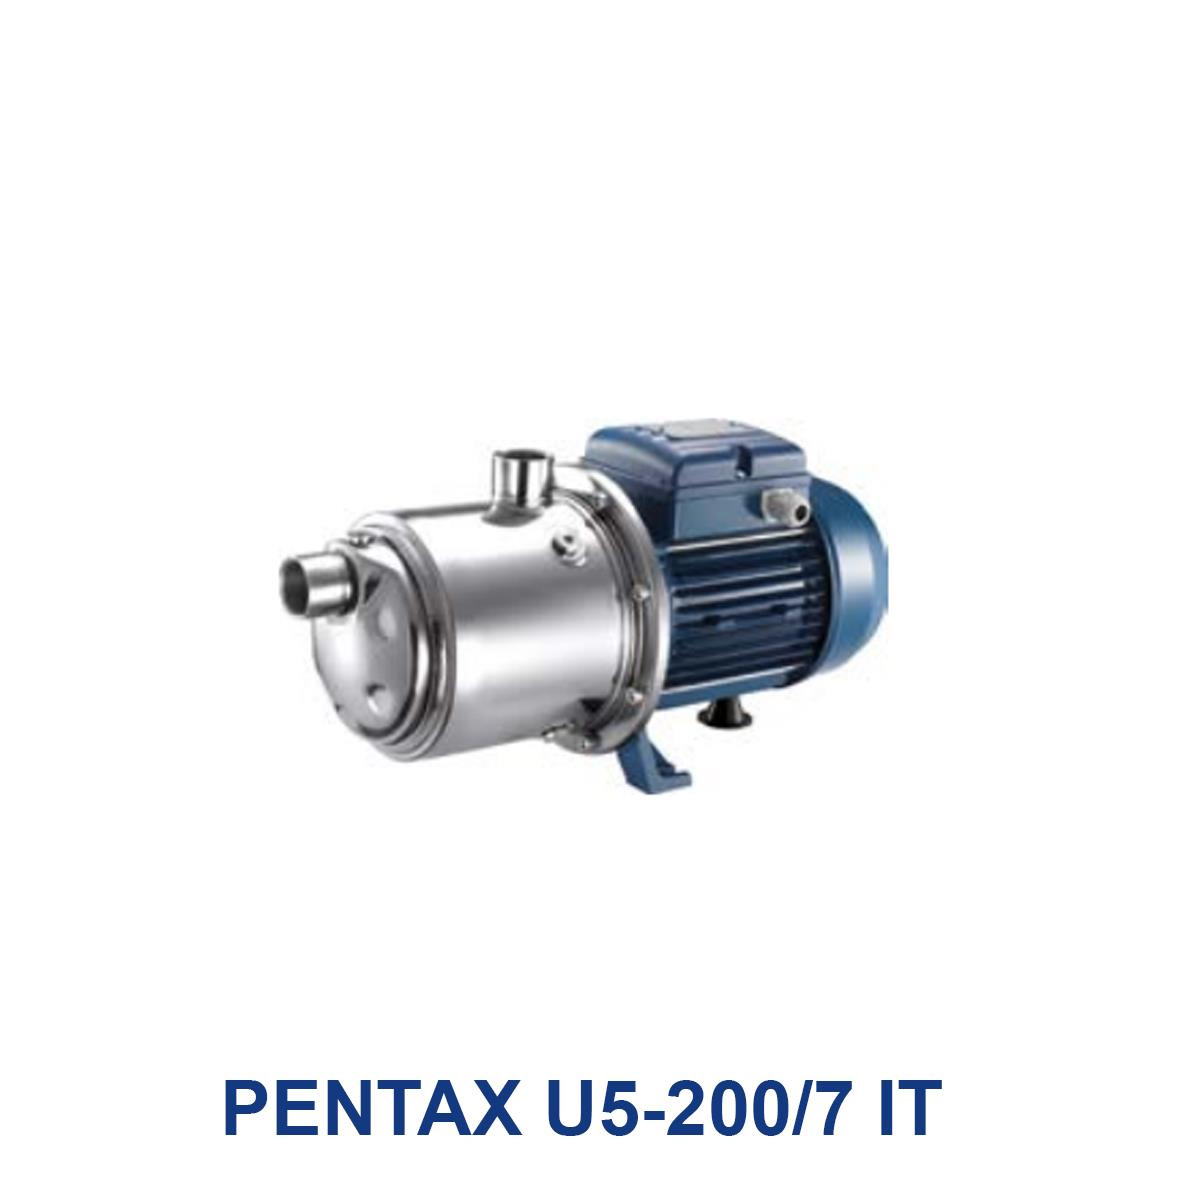 PENTAX-U5-200-7-IT